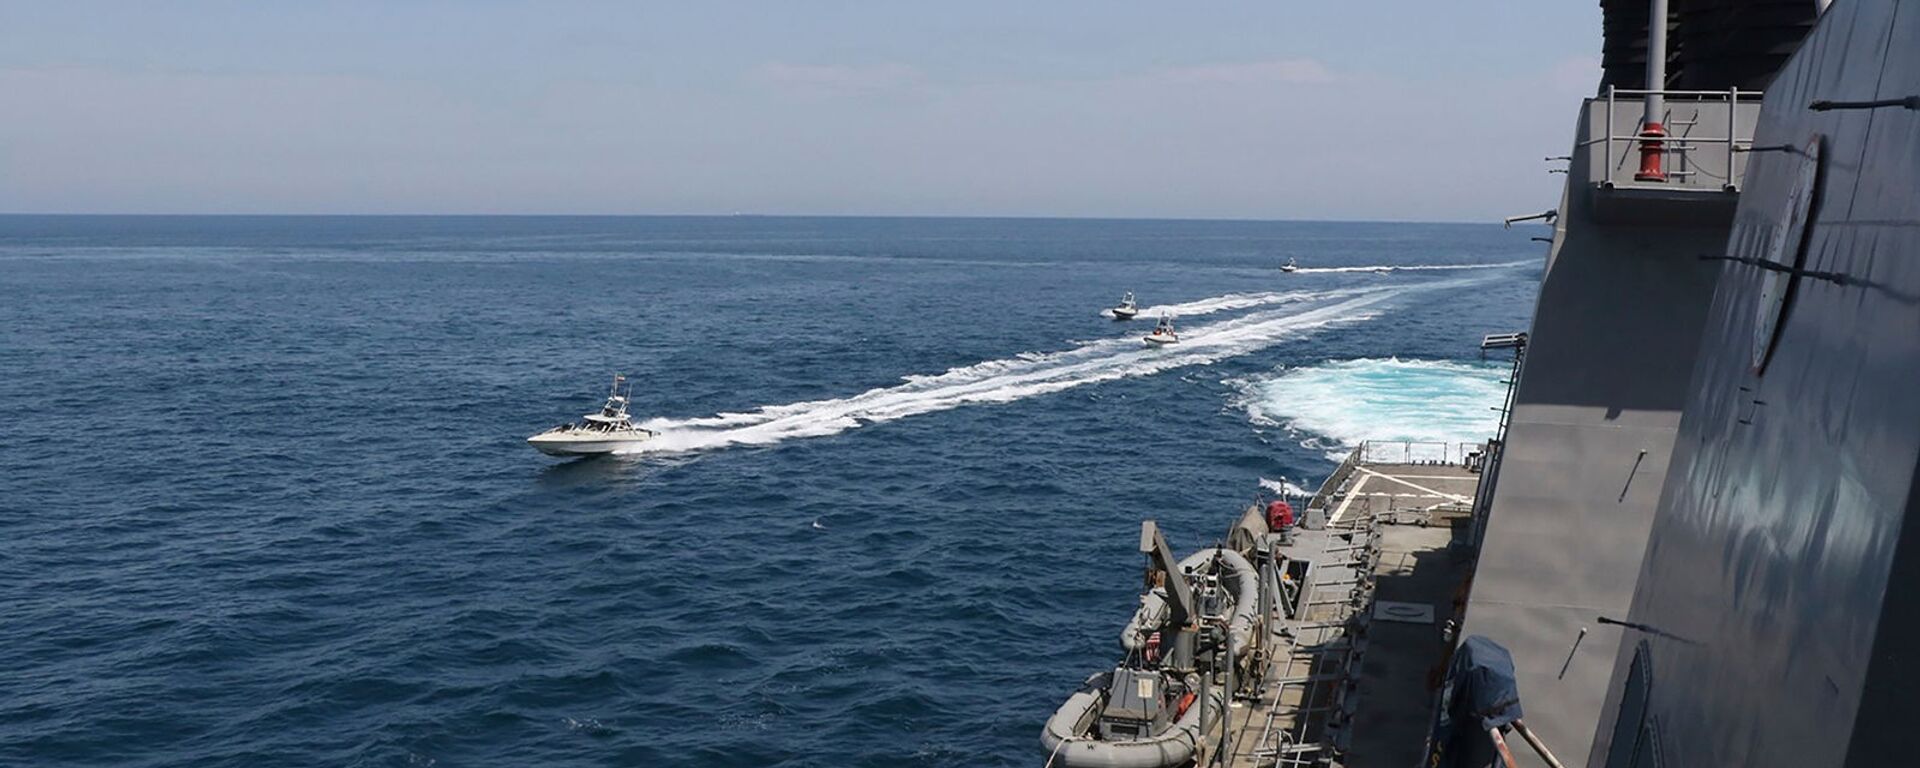 Иранские корабли Революционной гвардии плывут рядом с американскими военными кораблями в Персидском заливе близ Кувейта (15 апреля 2020). Персидский залив - Sputnik Армения, 1920, 14.02.2021